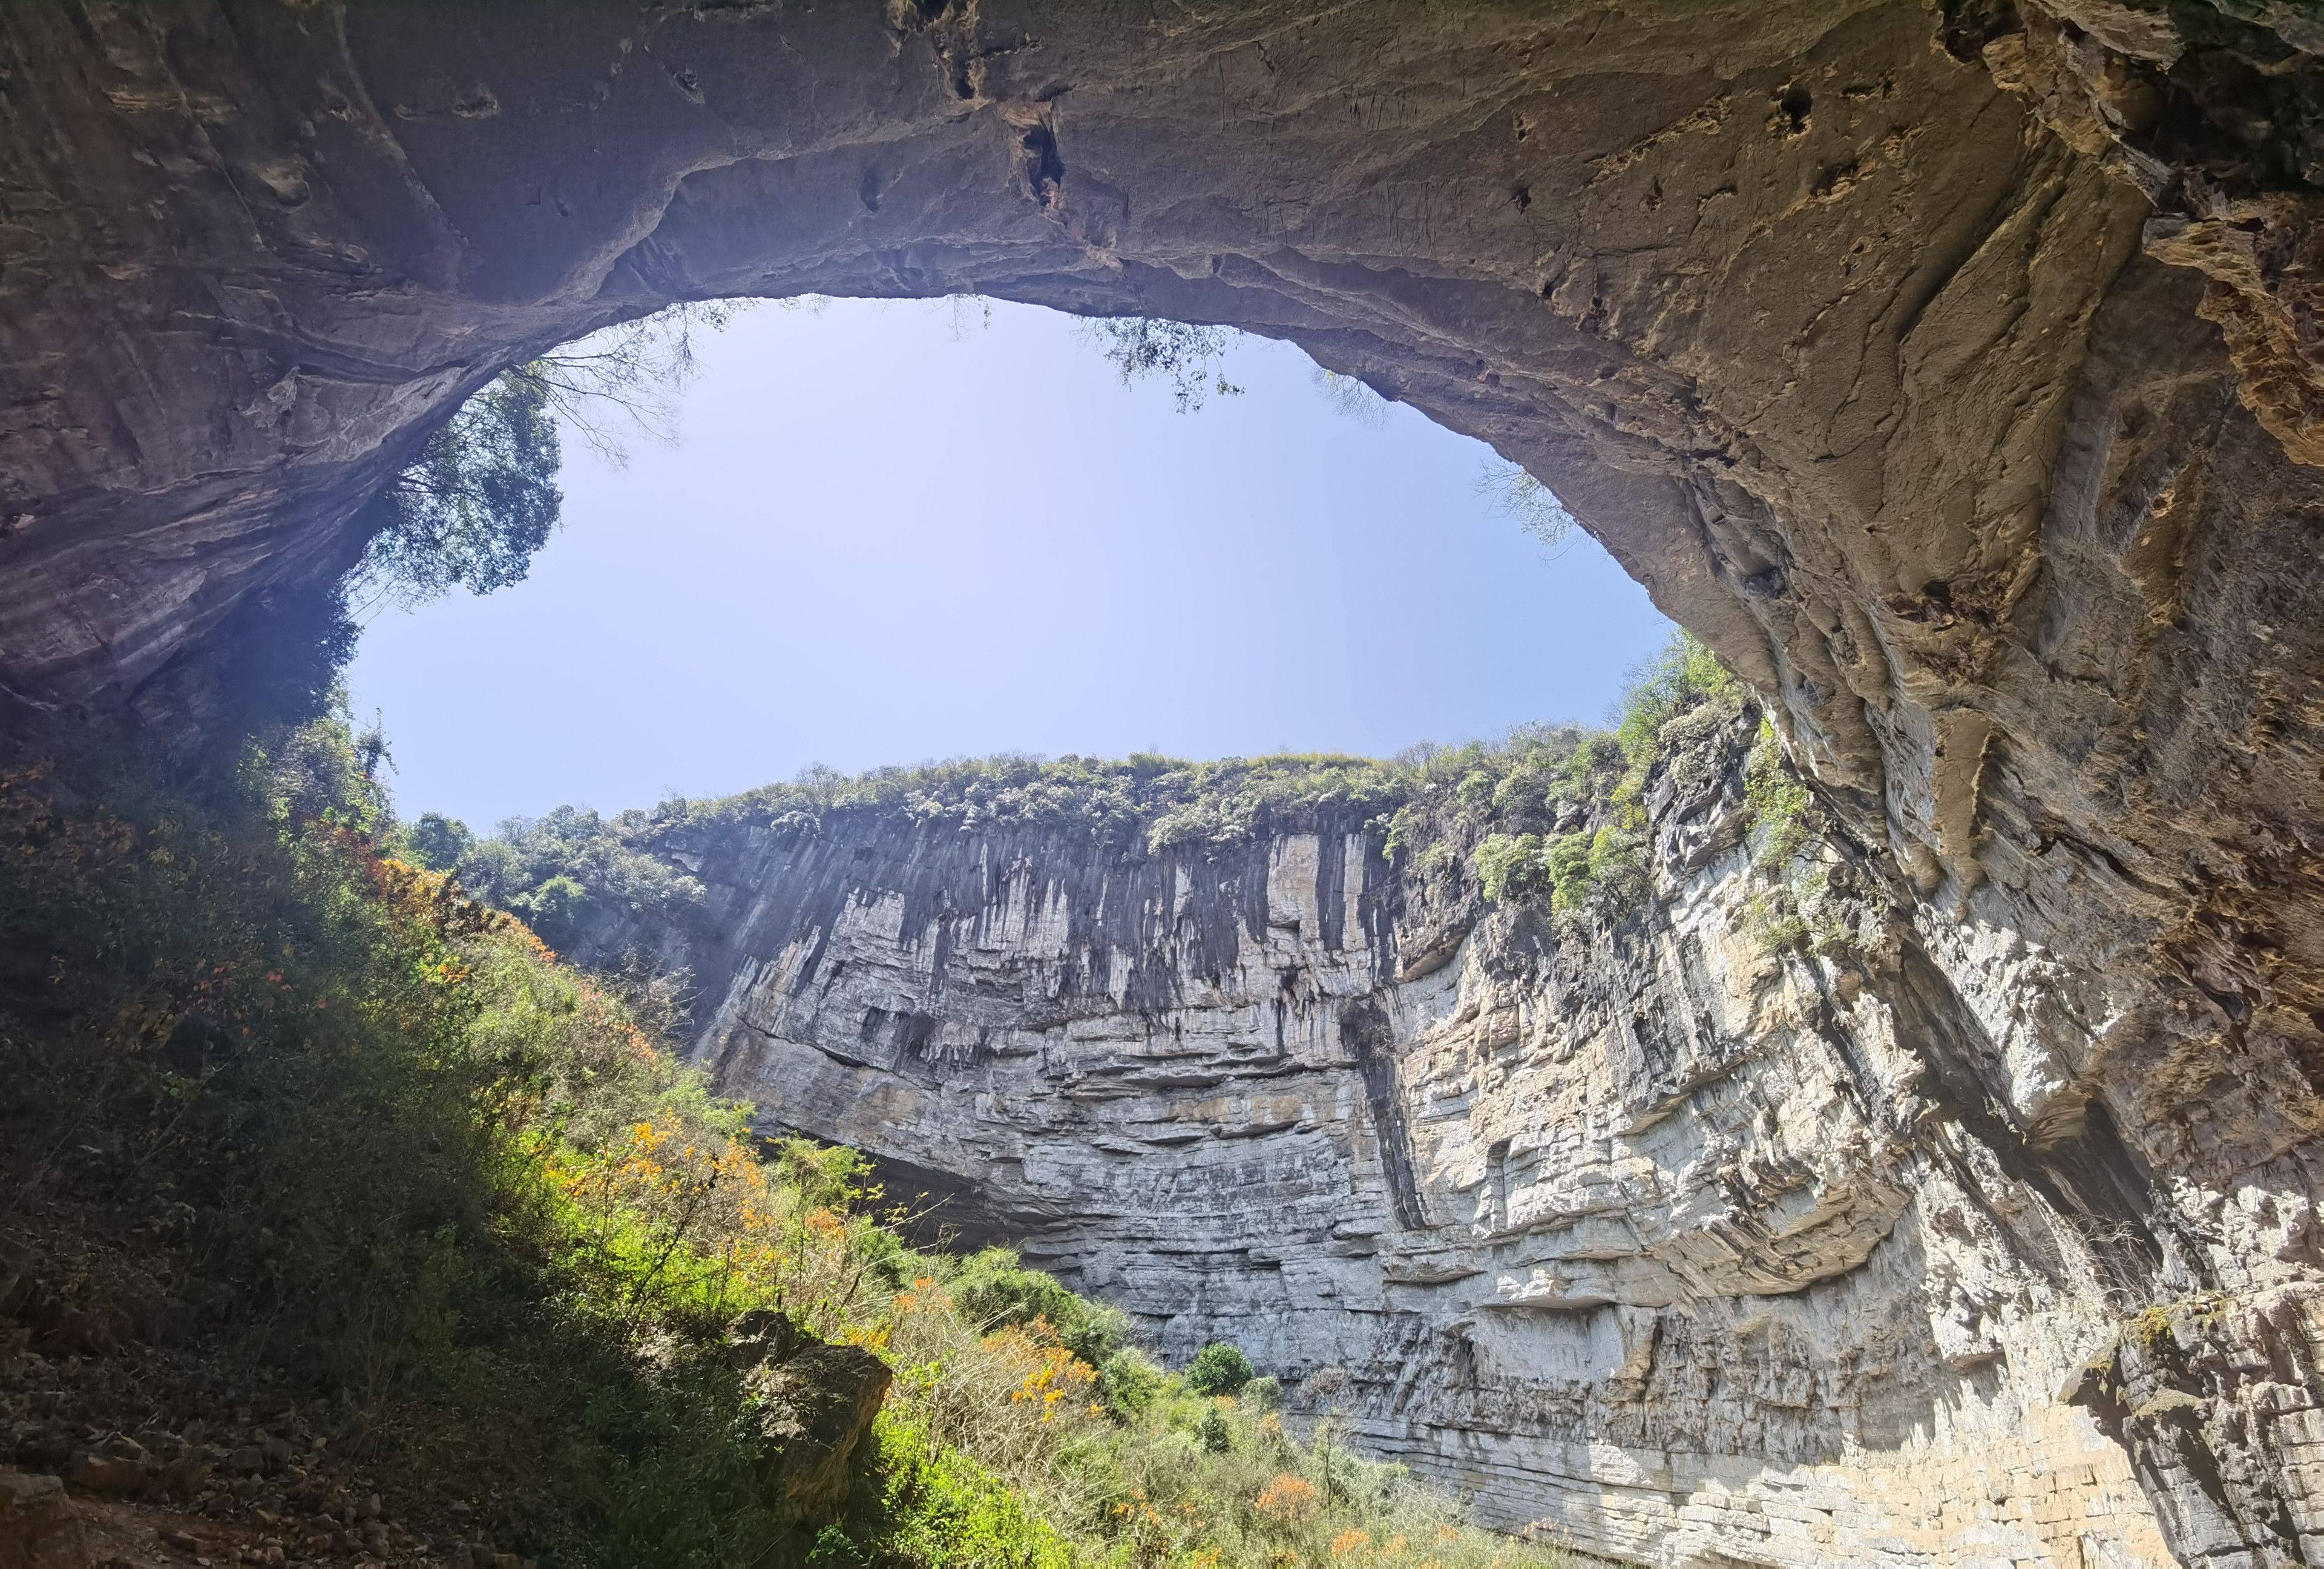 道县月岩,大自然的神奇造化,摩崖石刻更添人文气息